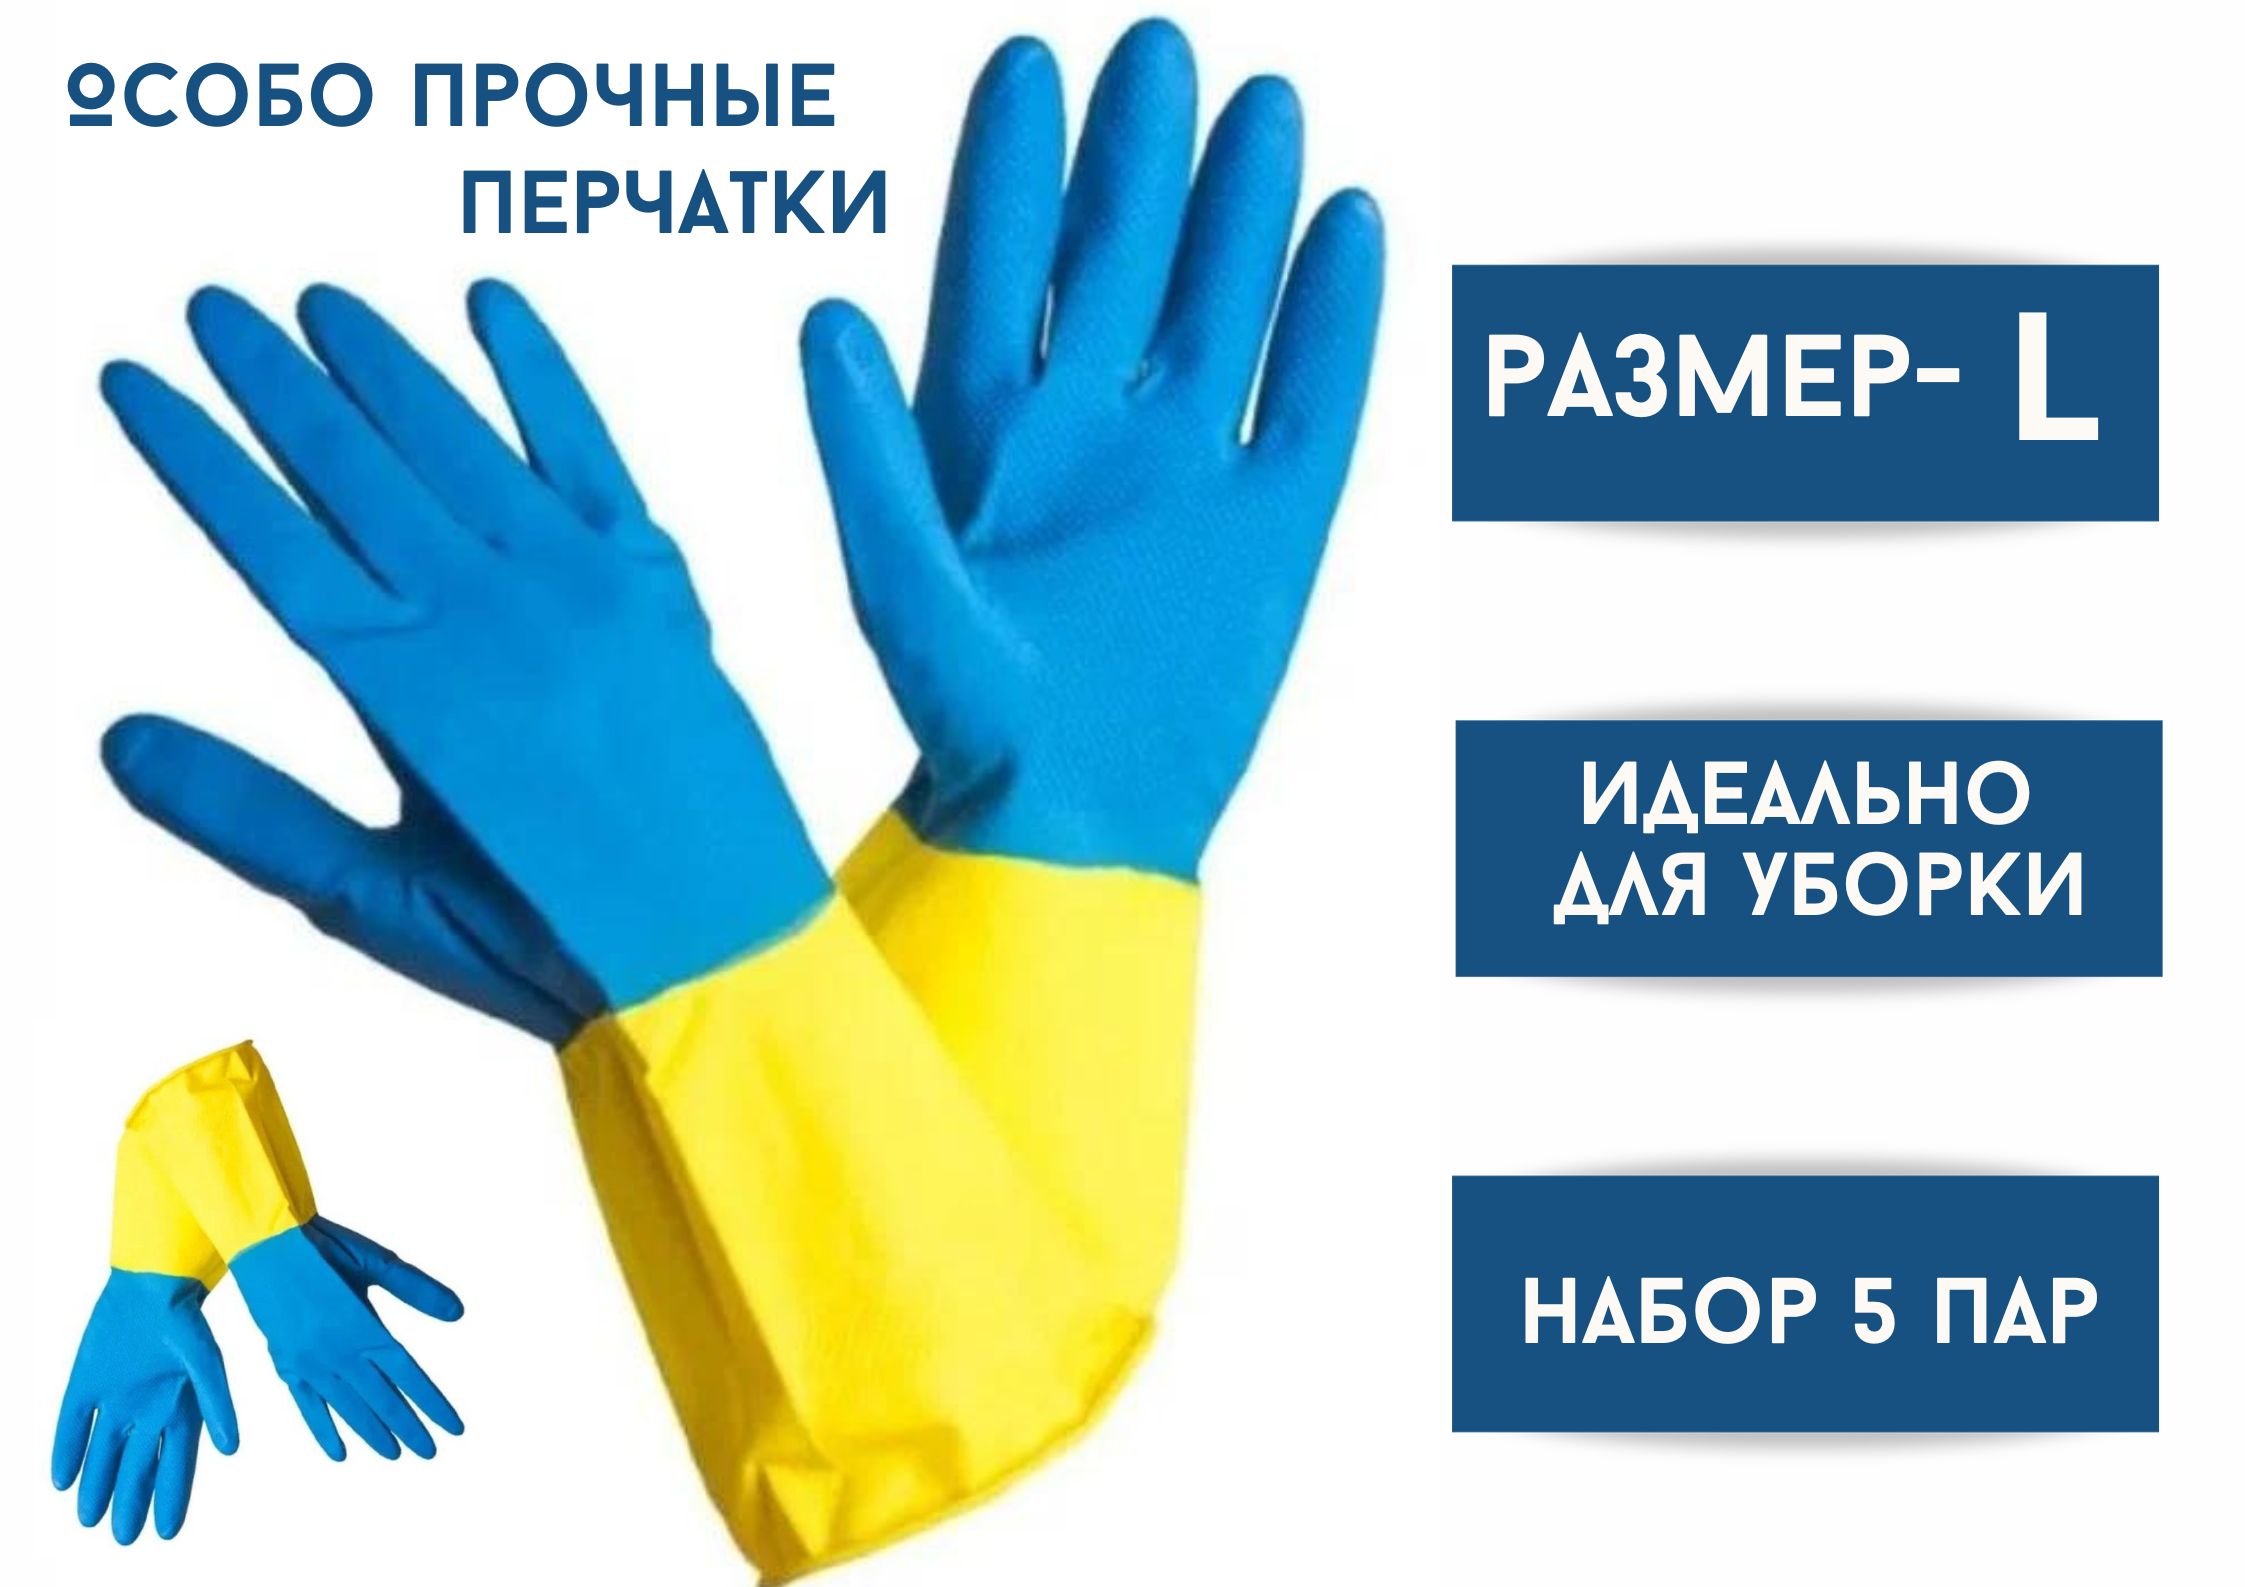 Перчатки хозяйственные БытСервис резиновые, L, особо прочные, синий-желтый, 5 пар